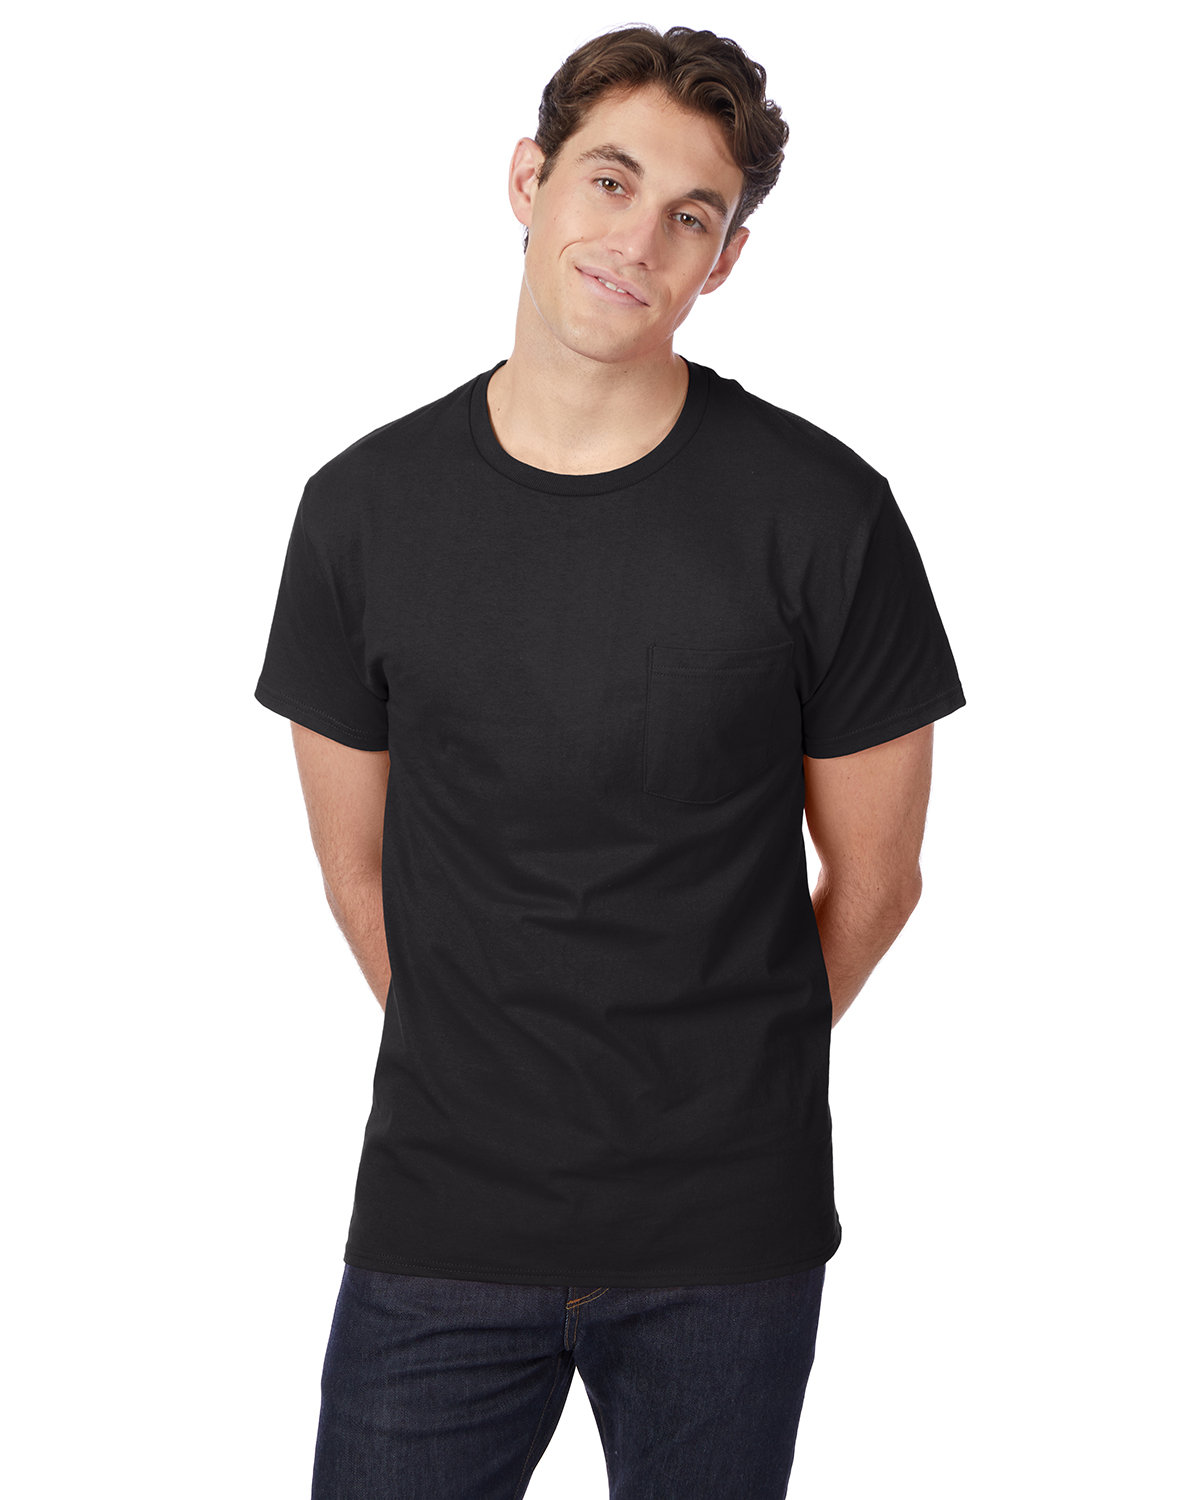 Hanes Men's Authentic-T Pocket T-Shirt black 